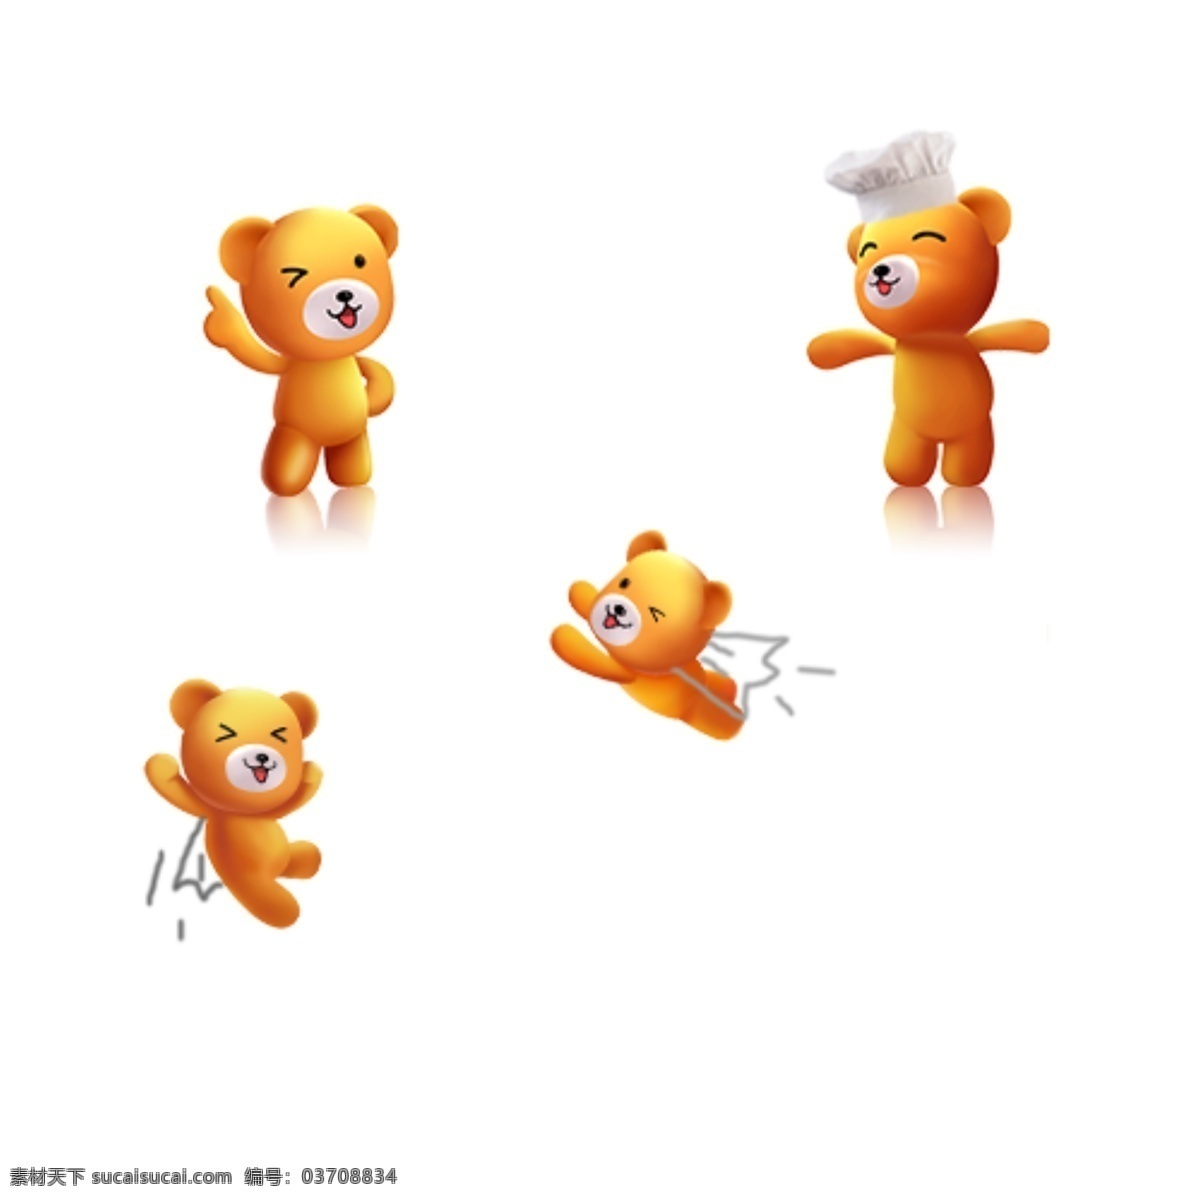 可爱 小 熊 矢量图 厨师帽 会飞的小熊 点赞 蹦跳的小熊 手指 笑口 阴影 四只小熊